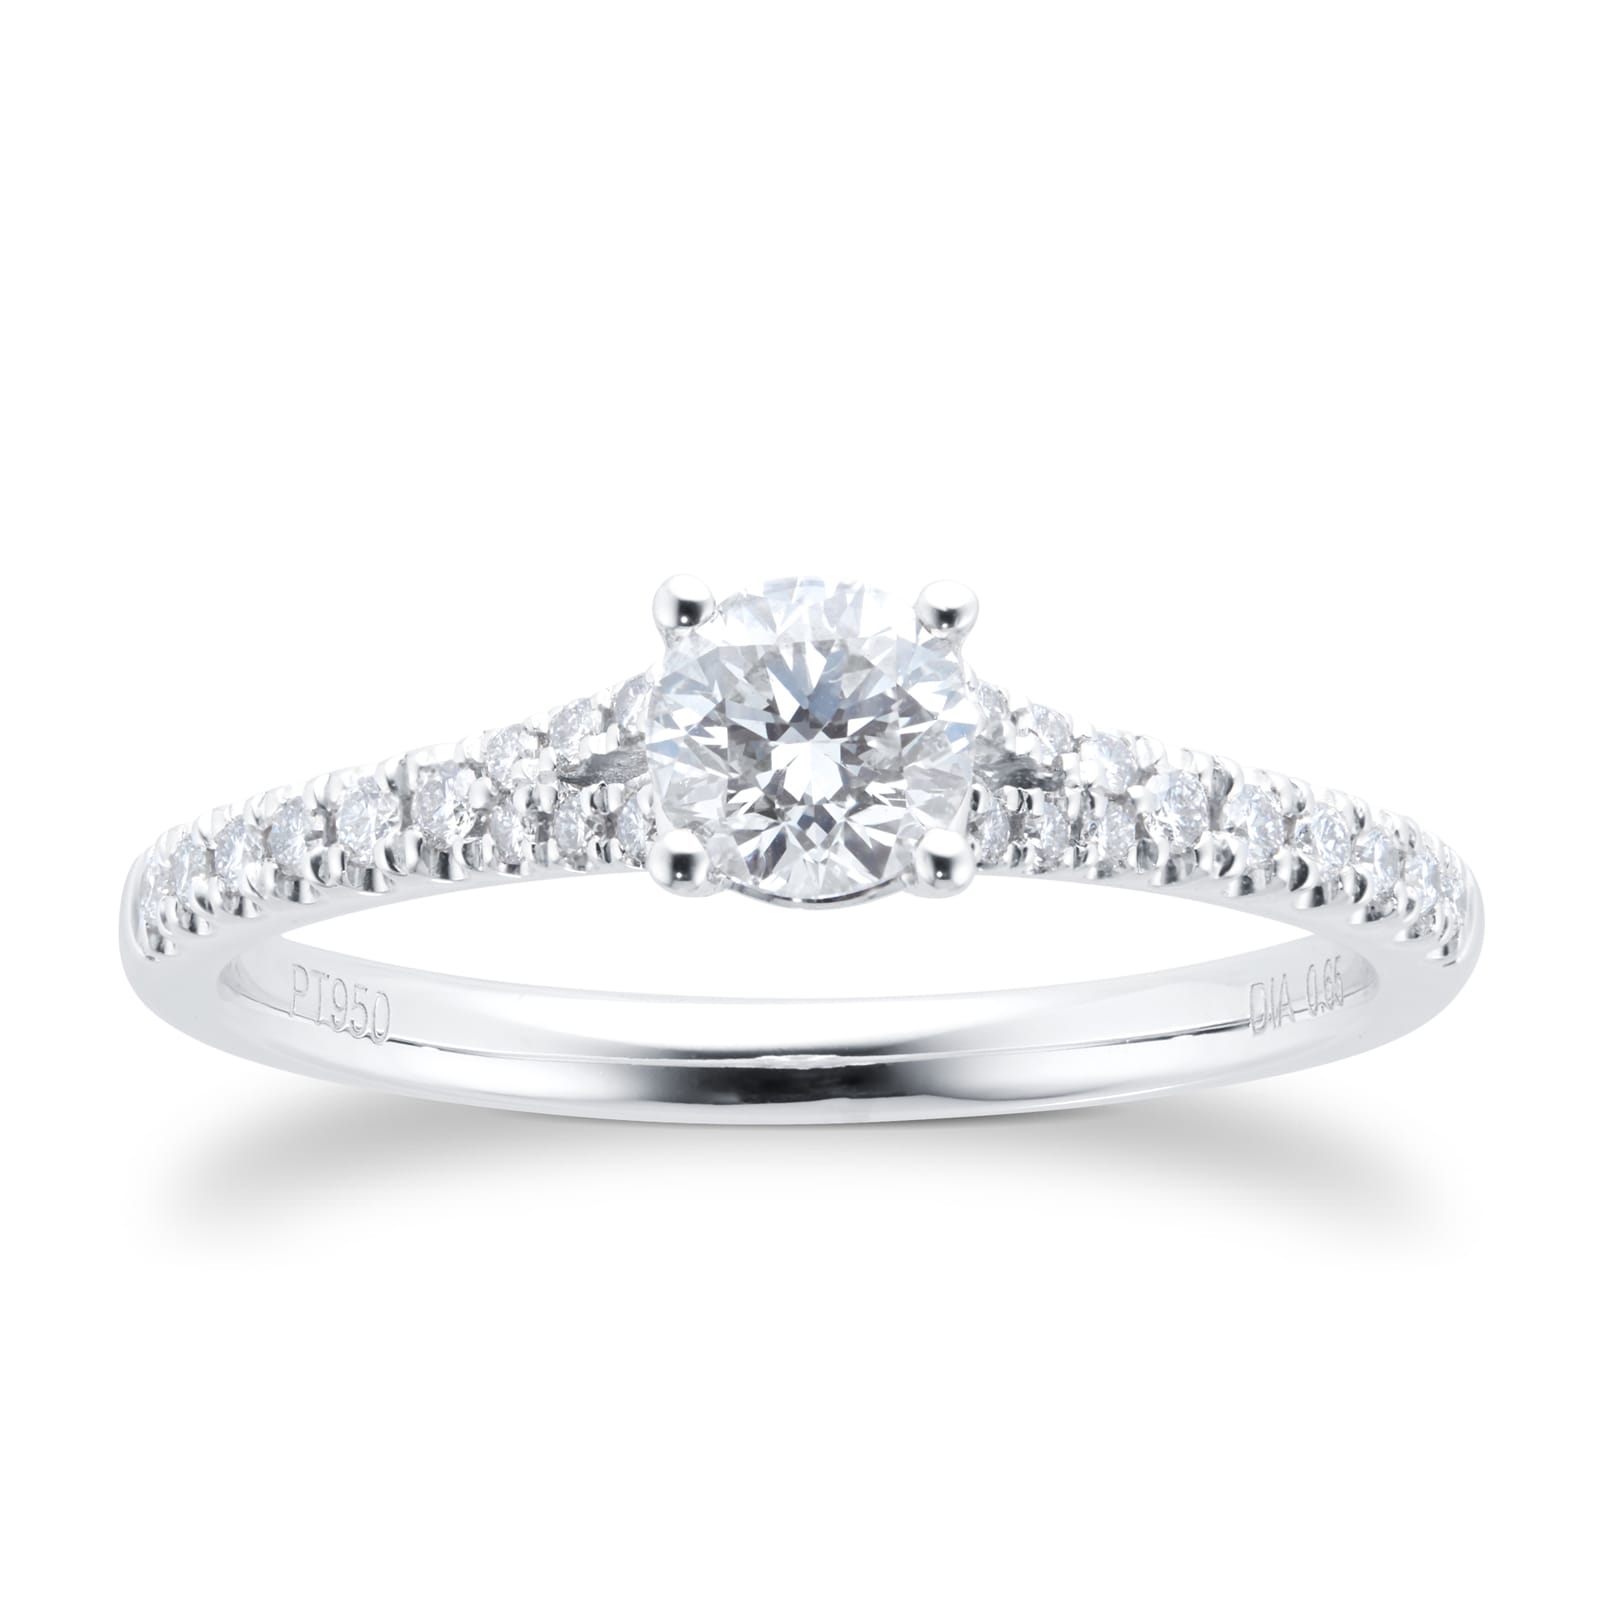 Platinum 0.65cttw Diamond Round Brilliant Cut Engagement Ring - Ring Size M